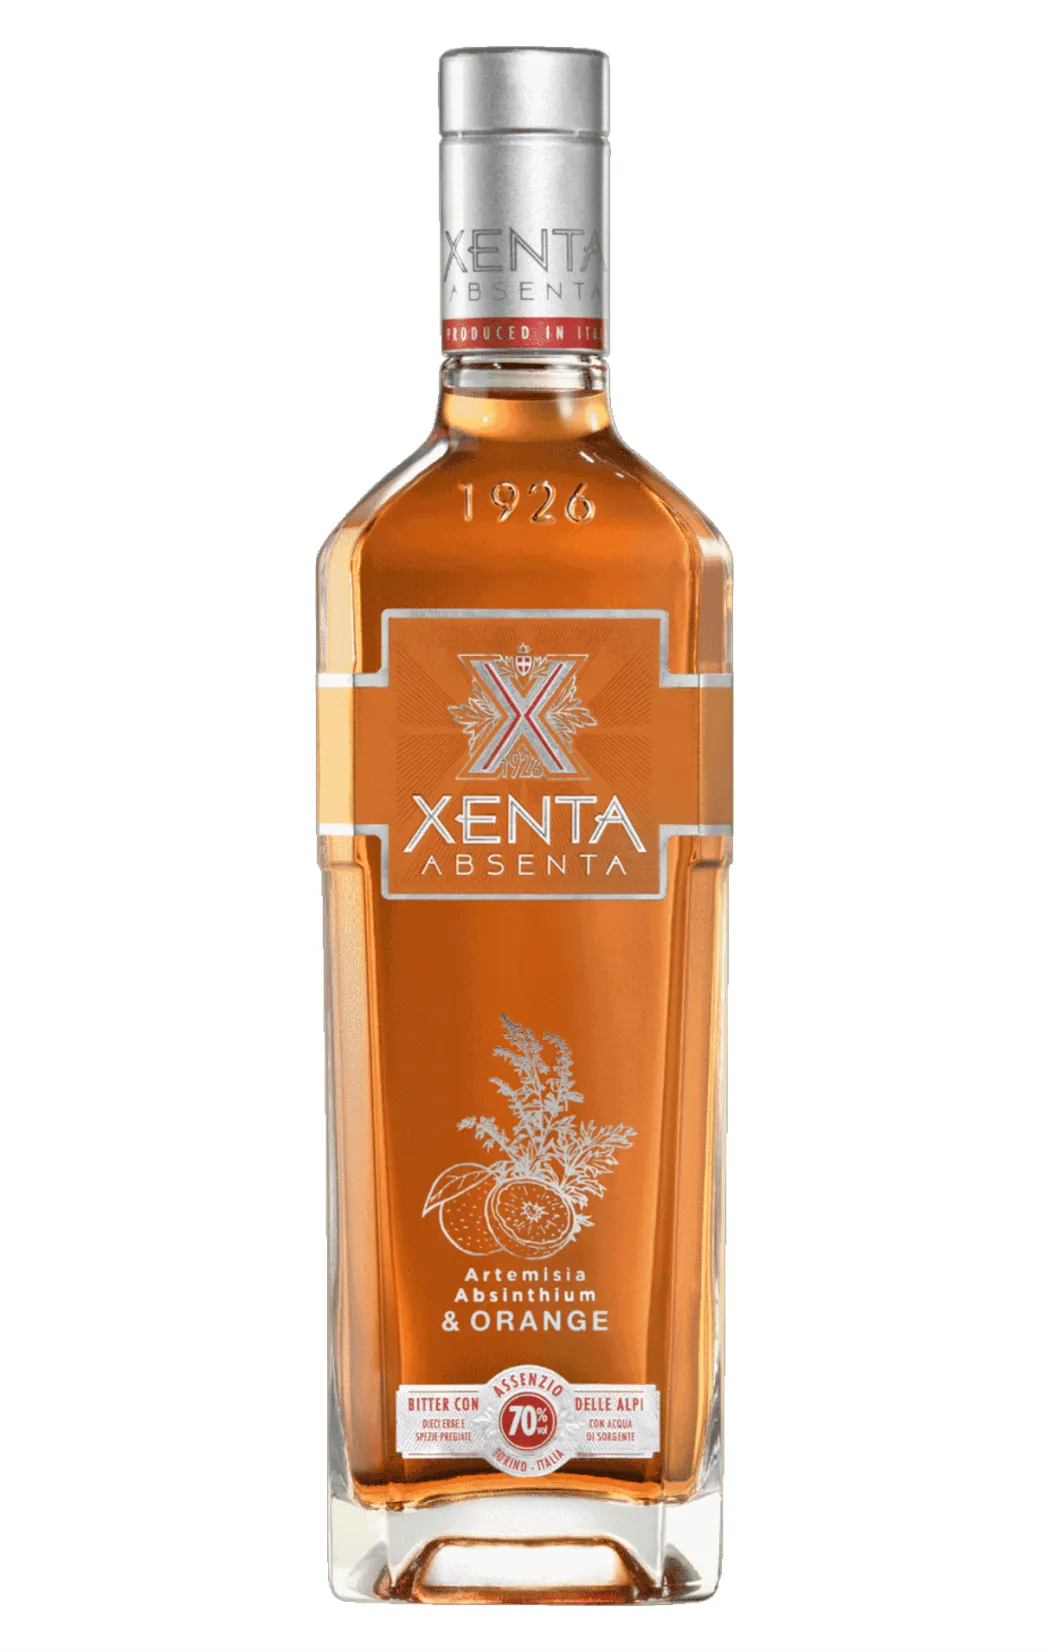 Xenta Absenta Orange